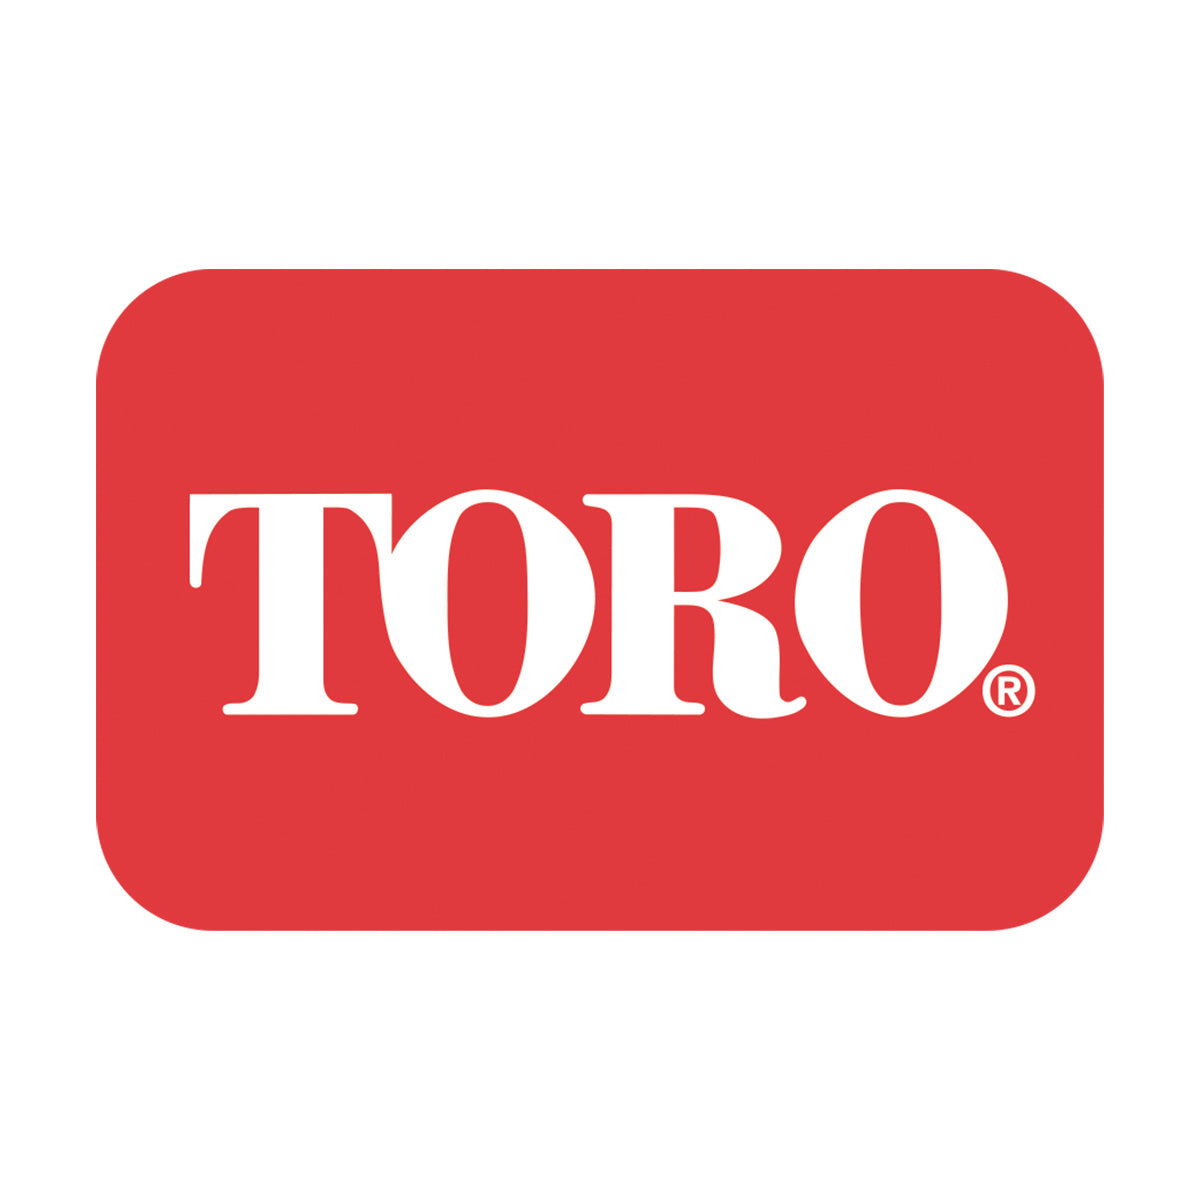 Toro Brand Logo